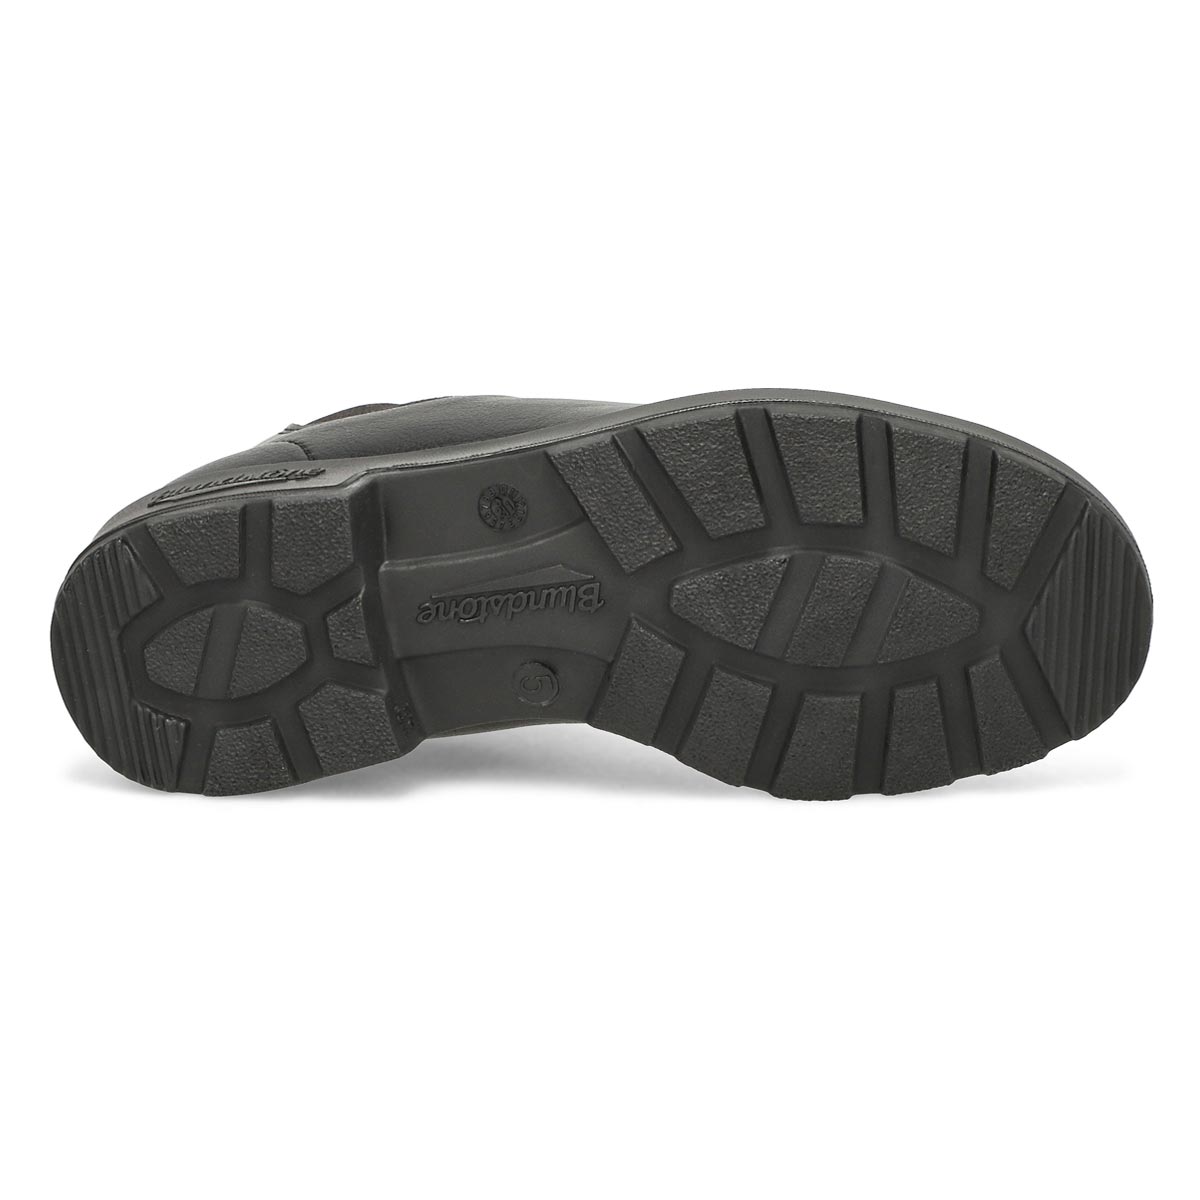 Unisex 2115 - Original Vegan Boot- Black